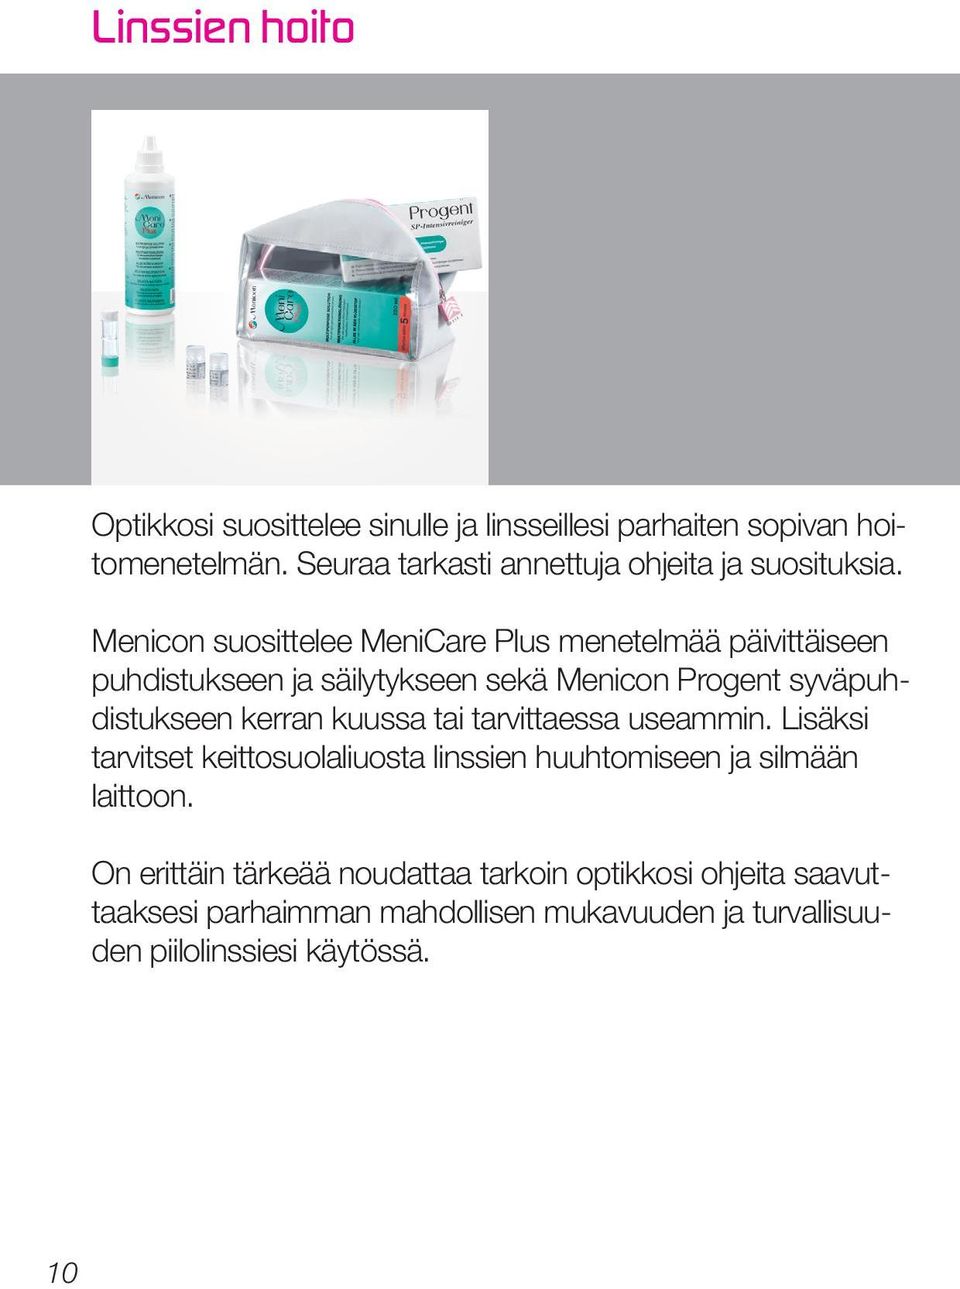 Menicon suosittelee MeniCare Plus menetelmää päivittäiseen puhdistukseen ja säilytykseen sekä Menicon Progent syväpuhdistukseen kerran